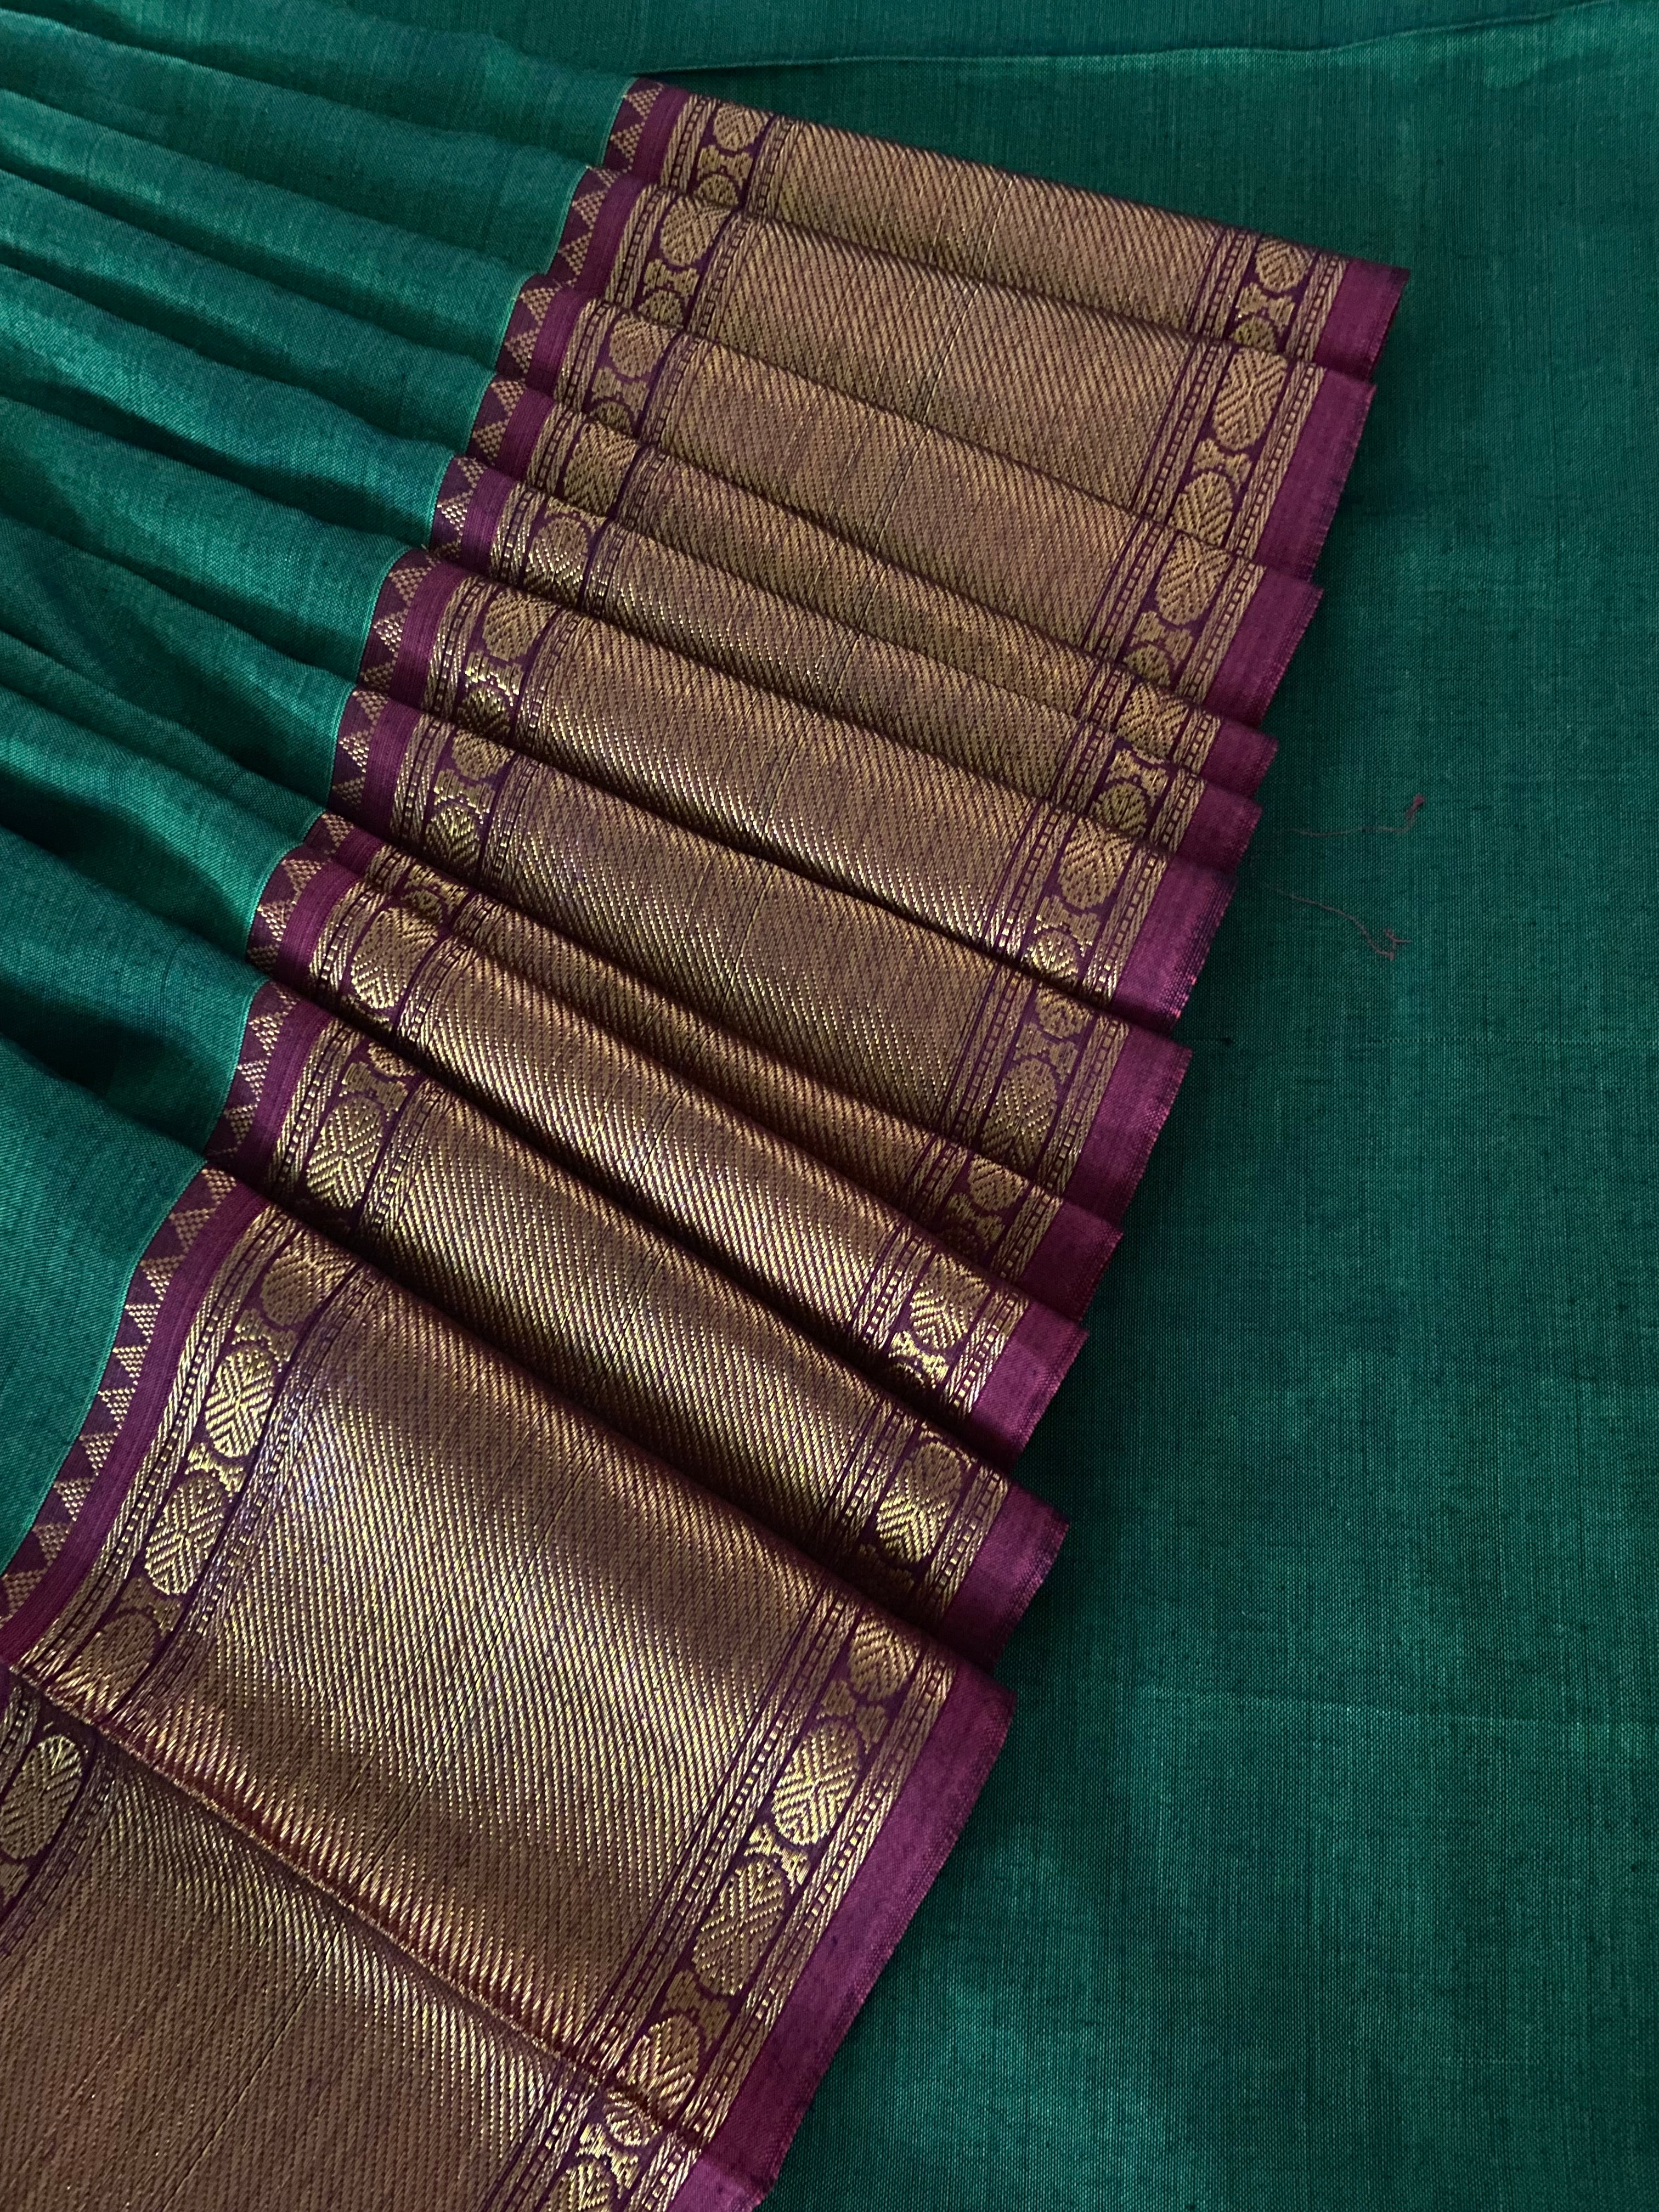 Fabric #025